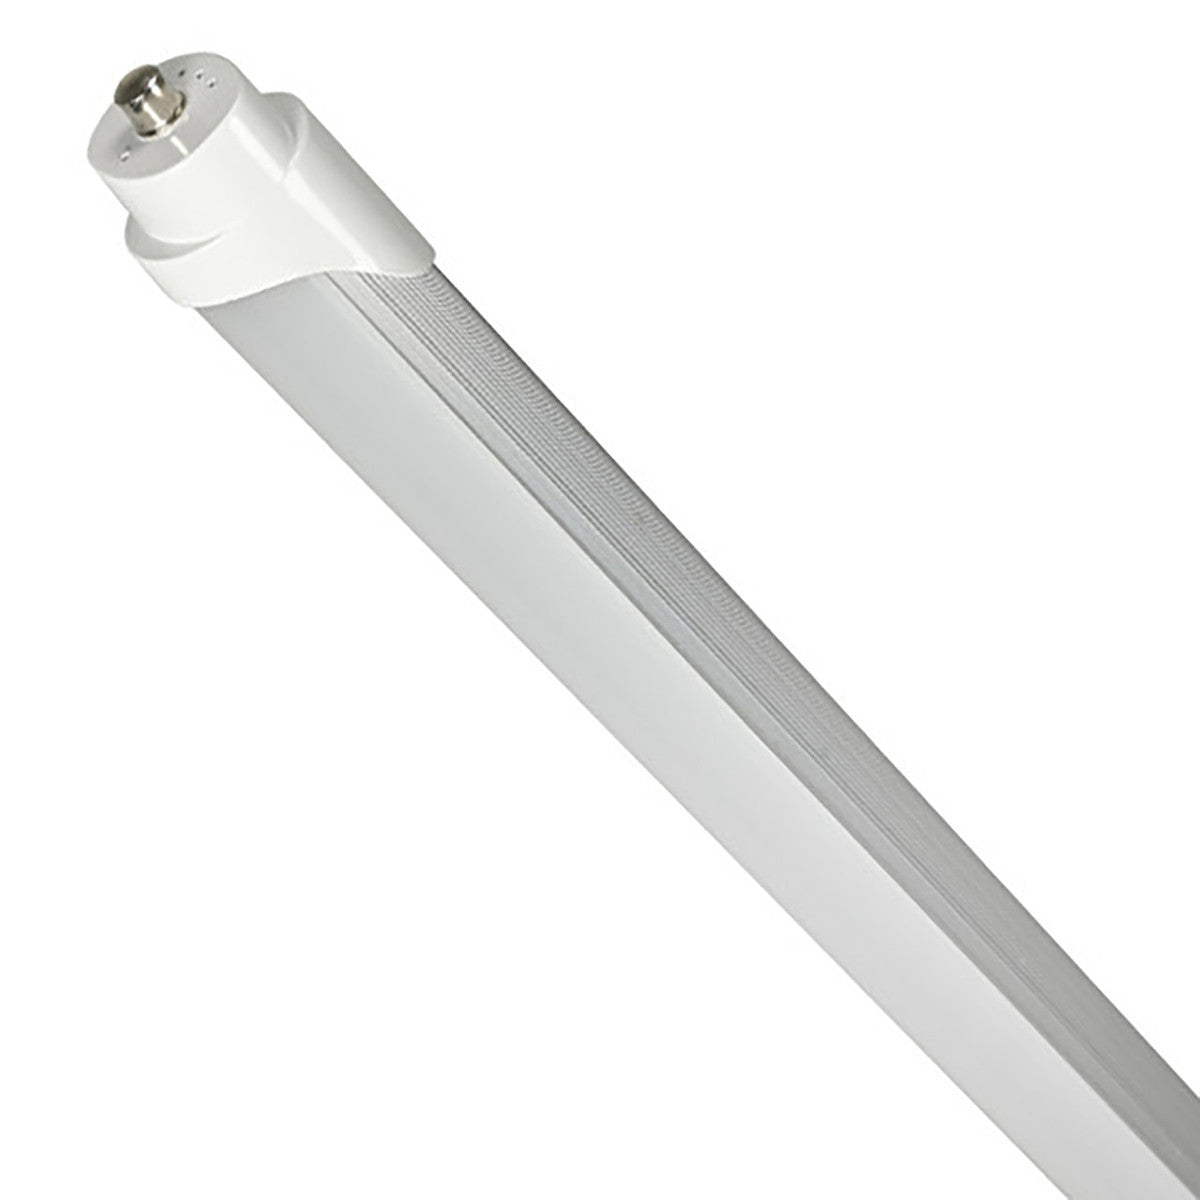 8ft LED Tube Light - 40W - 4000K - 5000 Lumens - AC100-277V - Frosted Cover - (25-Pack)